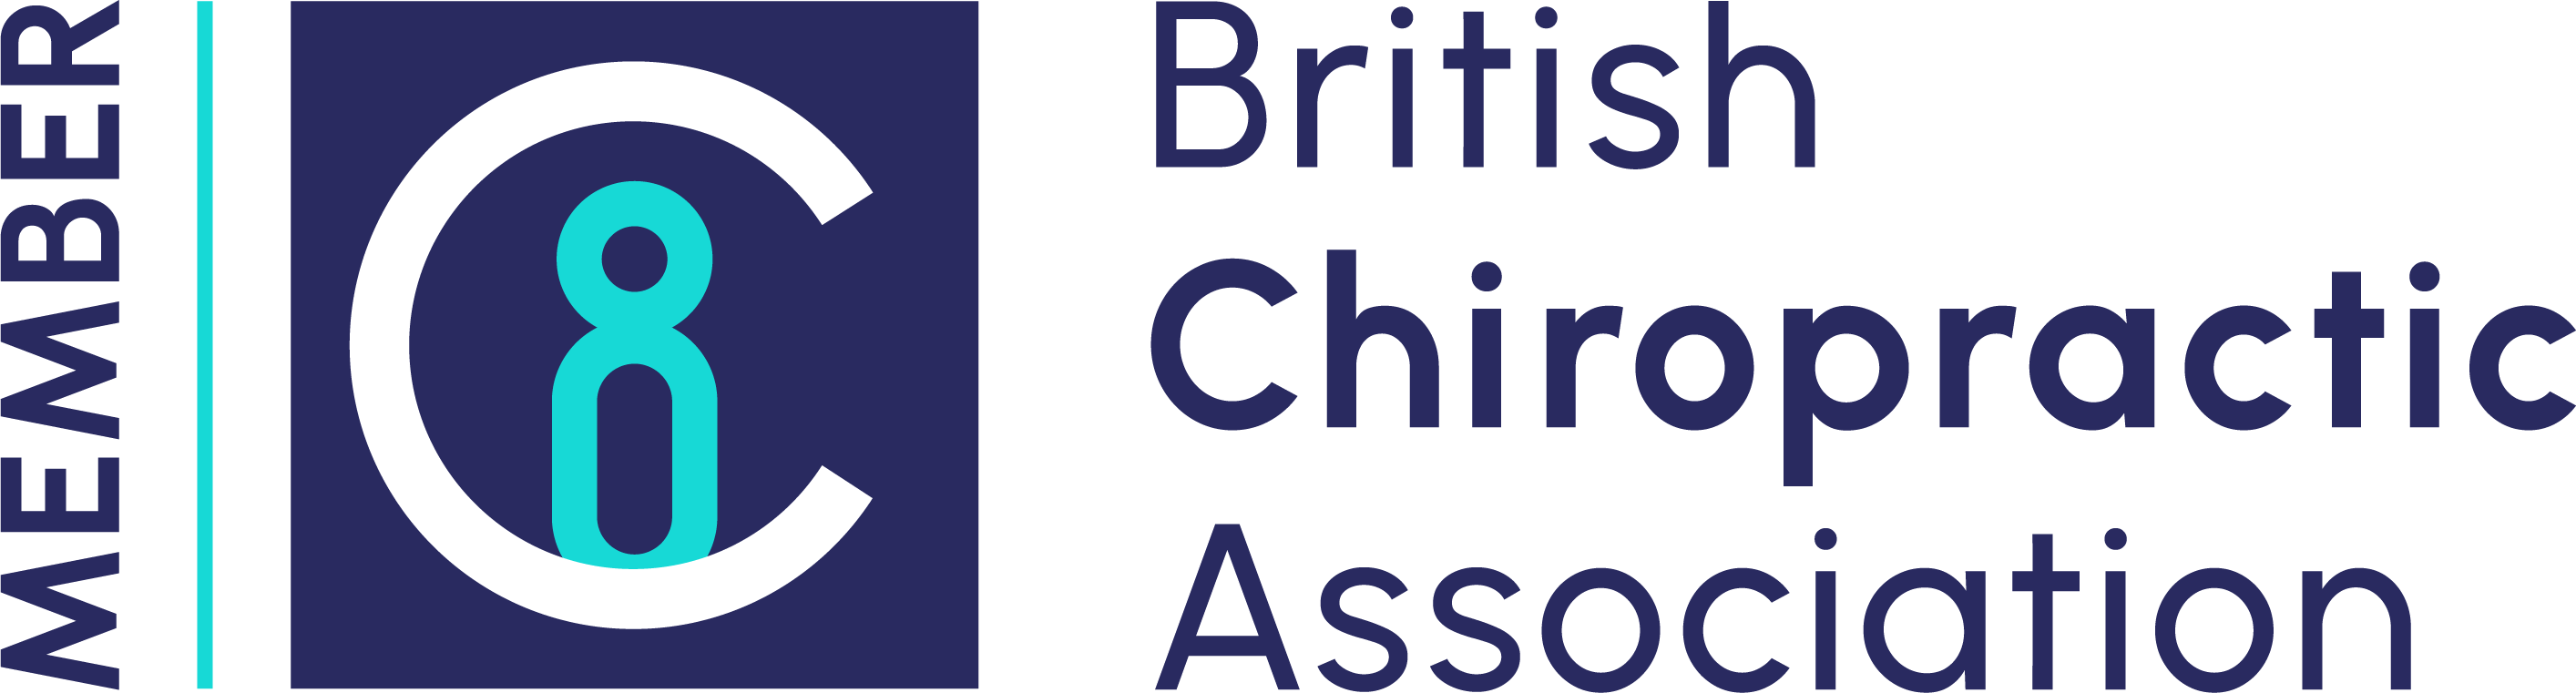 BCA logo